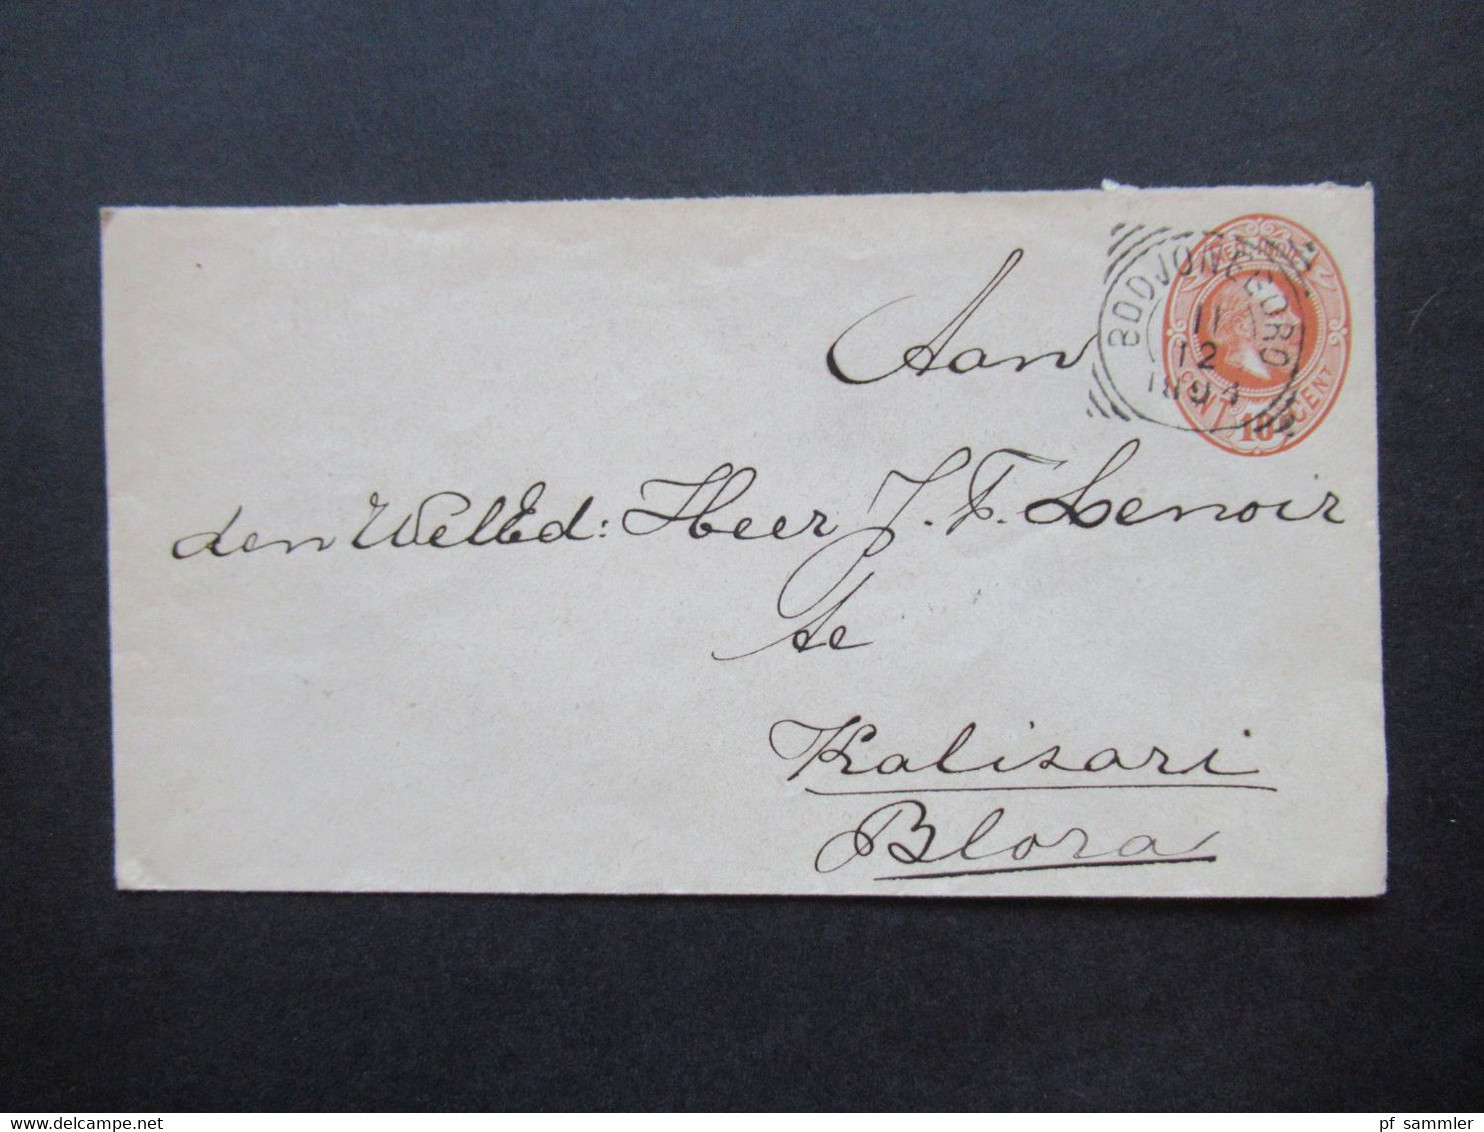 Niederländisch Indien 1894 GA Umschlag Mit 4 Stempeln U.a. Bodjonegoro Nach Blaza Gesendet Auslandsbrief - Indes Néerlandaises